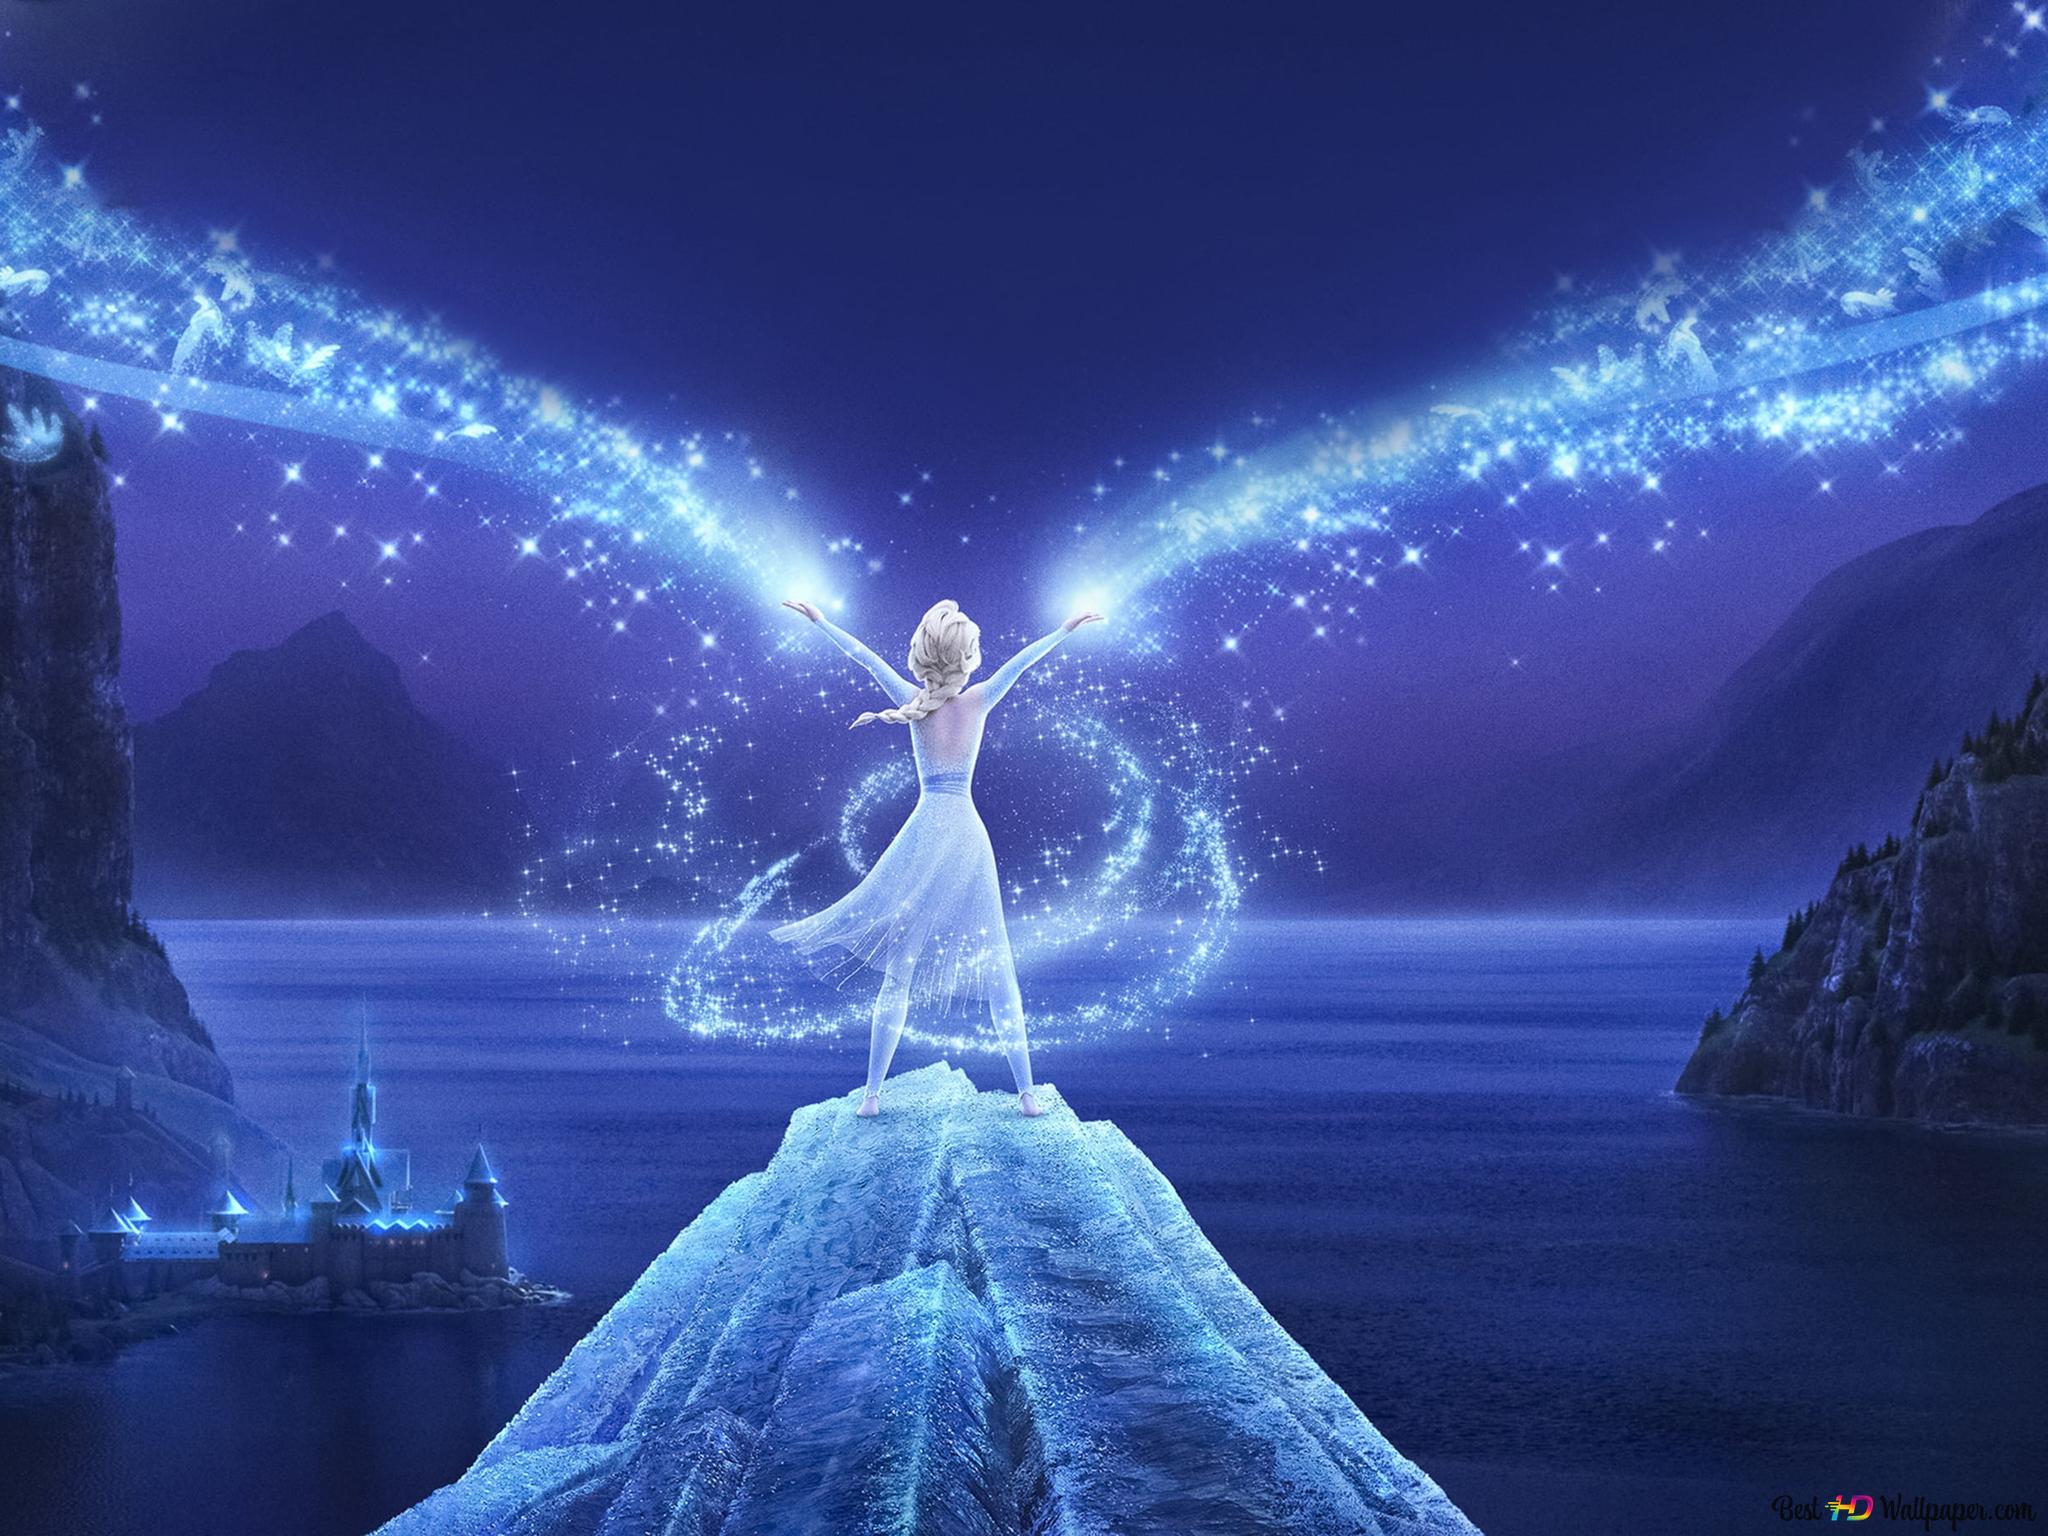 Queen Elsa magic looking at the sea at night 4K wallpaper download